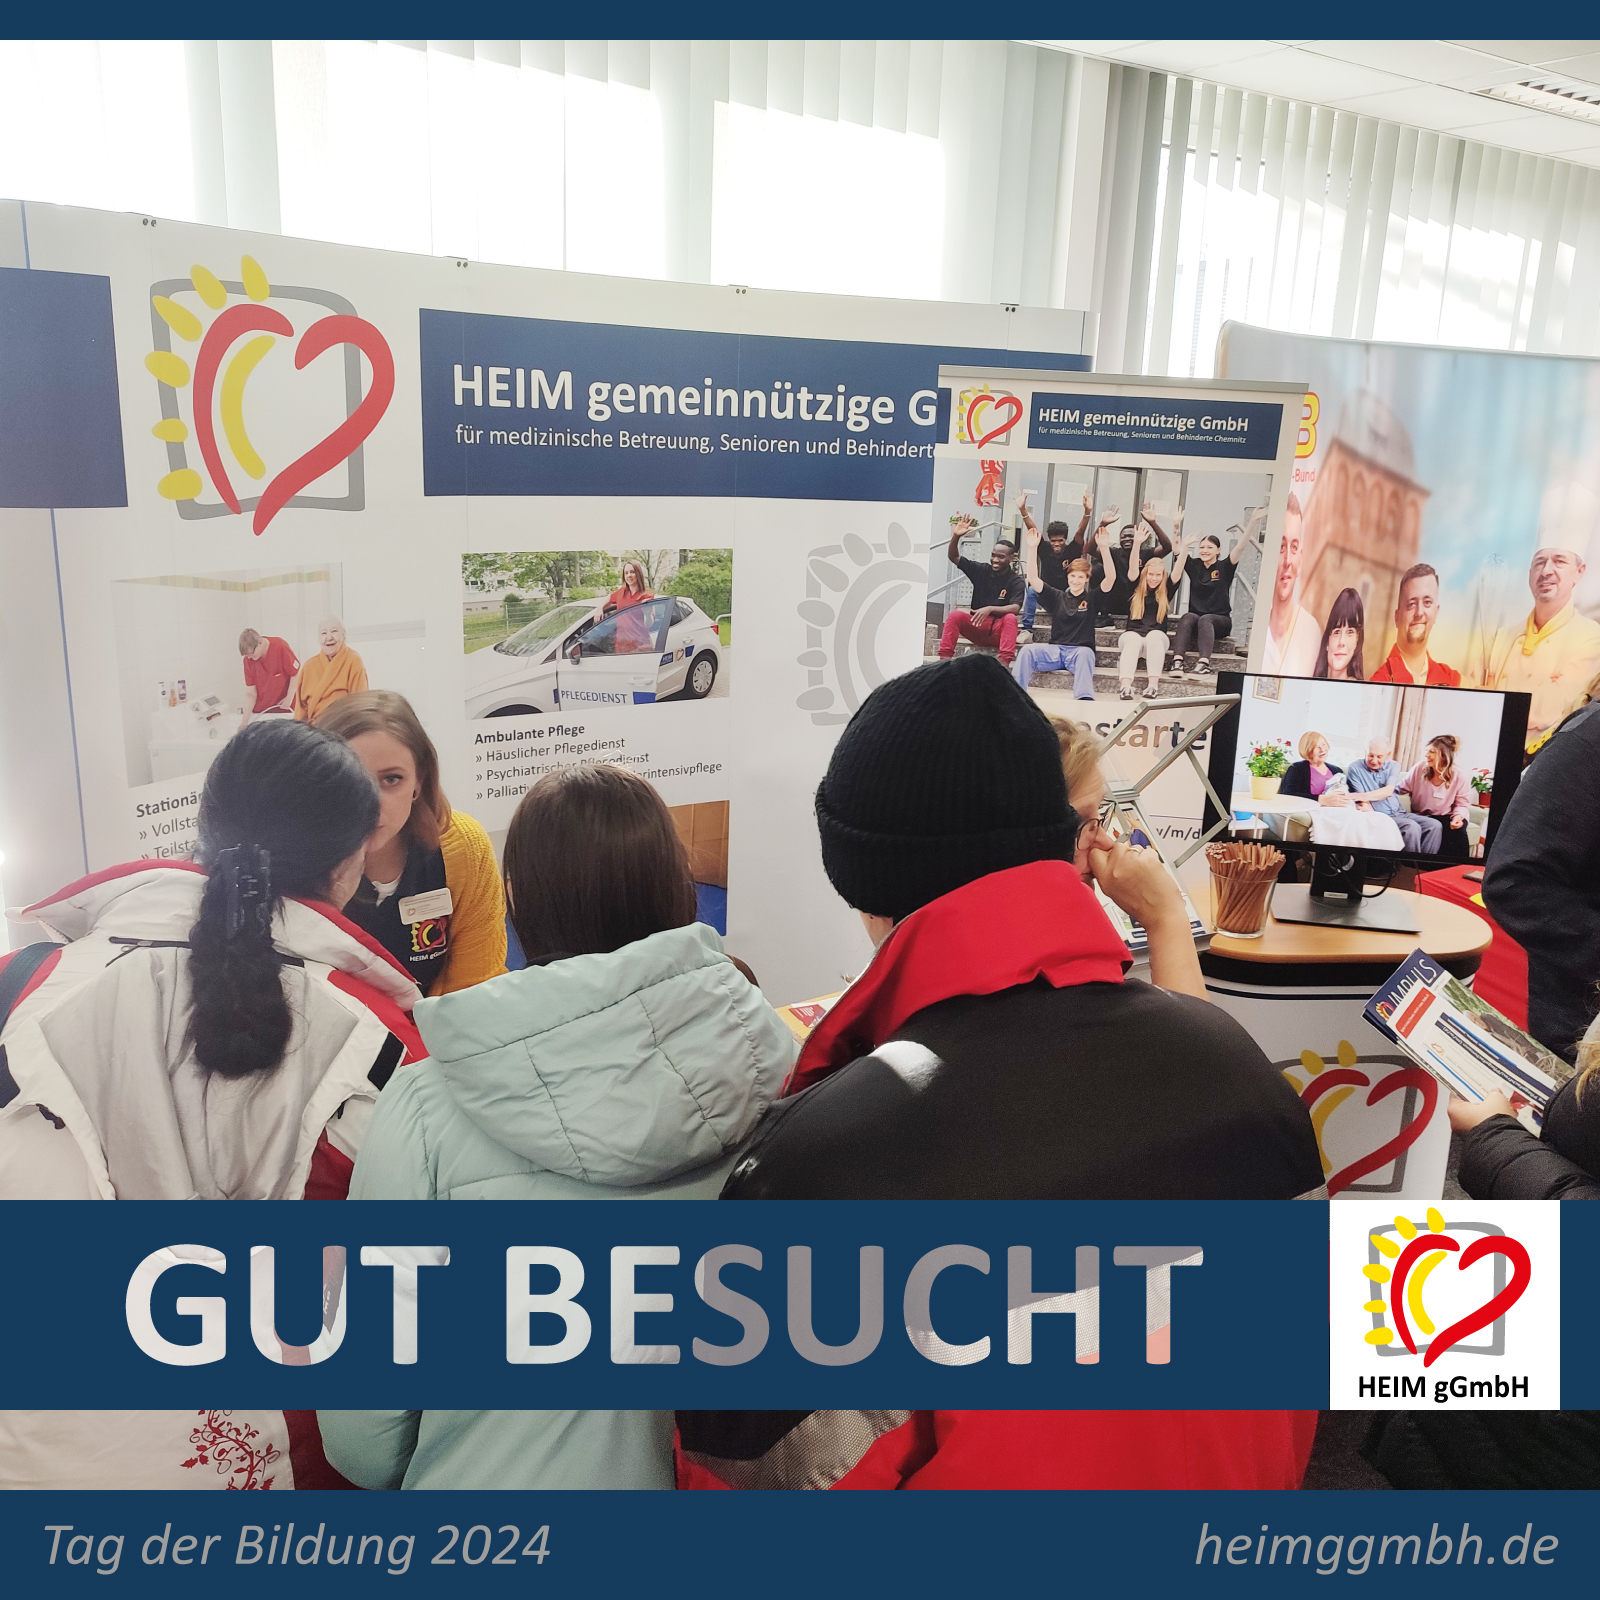 Die HEIM gemeinnützige GmbH mit einem Stand auf dem "Tag der Bildung" in der Agentur für Arbeit in Chemnitz